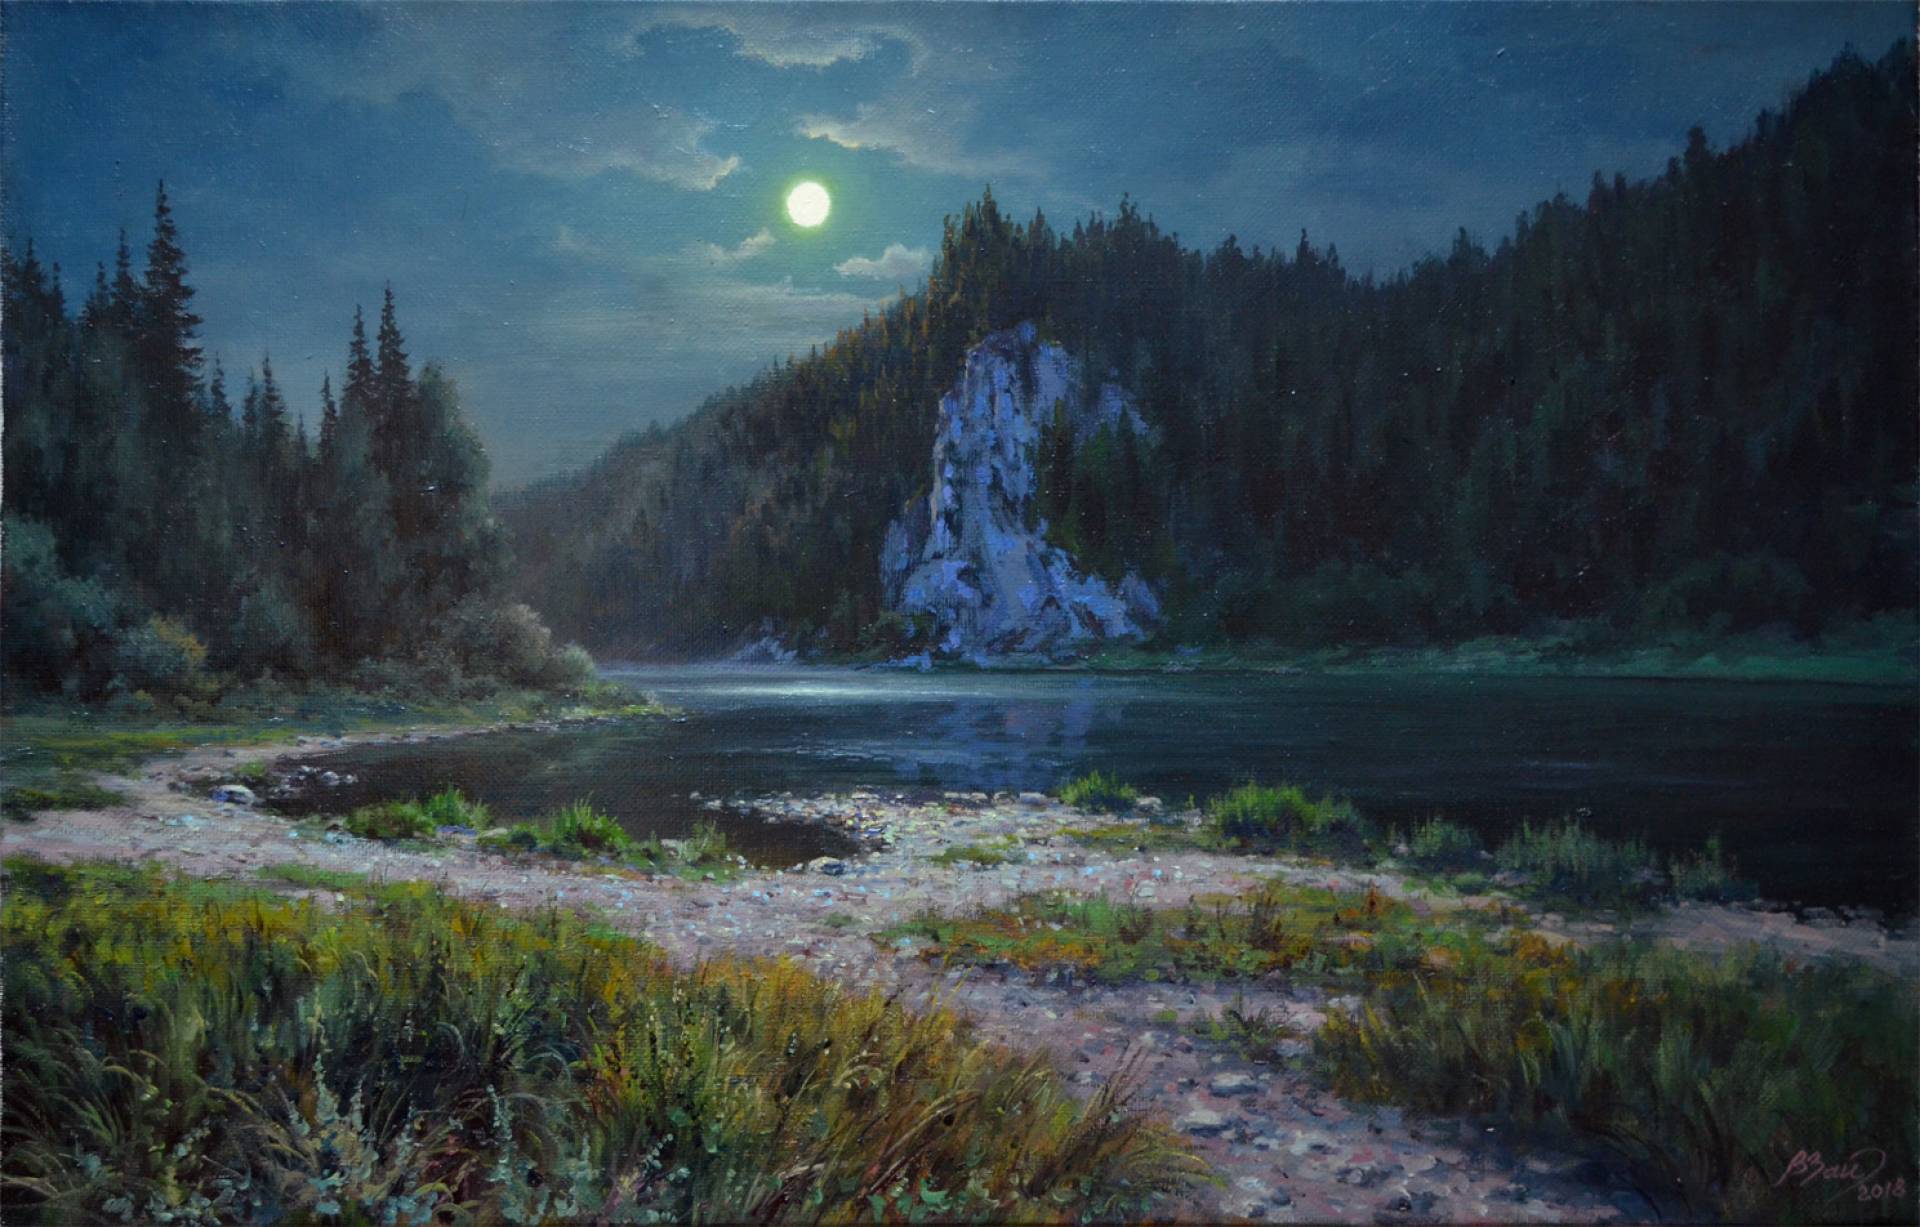 Night on Chusovaya River, Vadim Zainullin, Buy the painting Oil